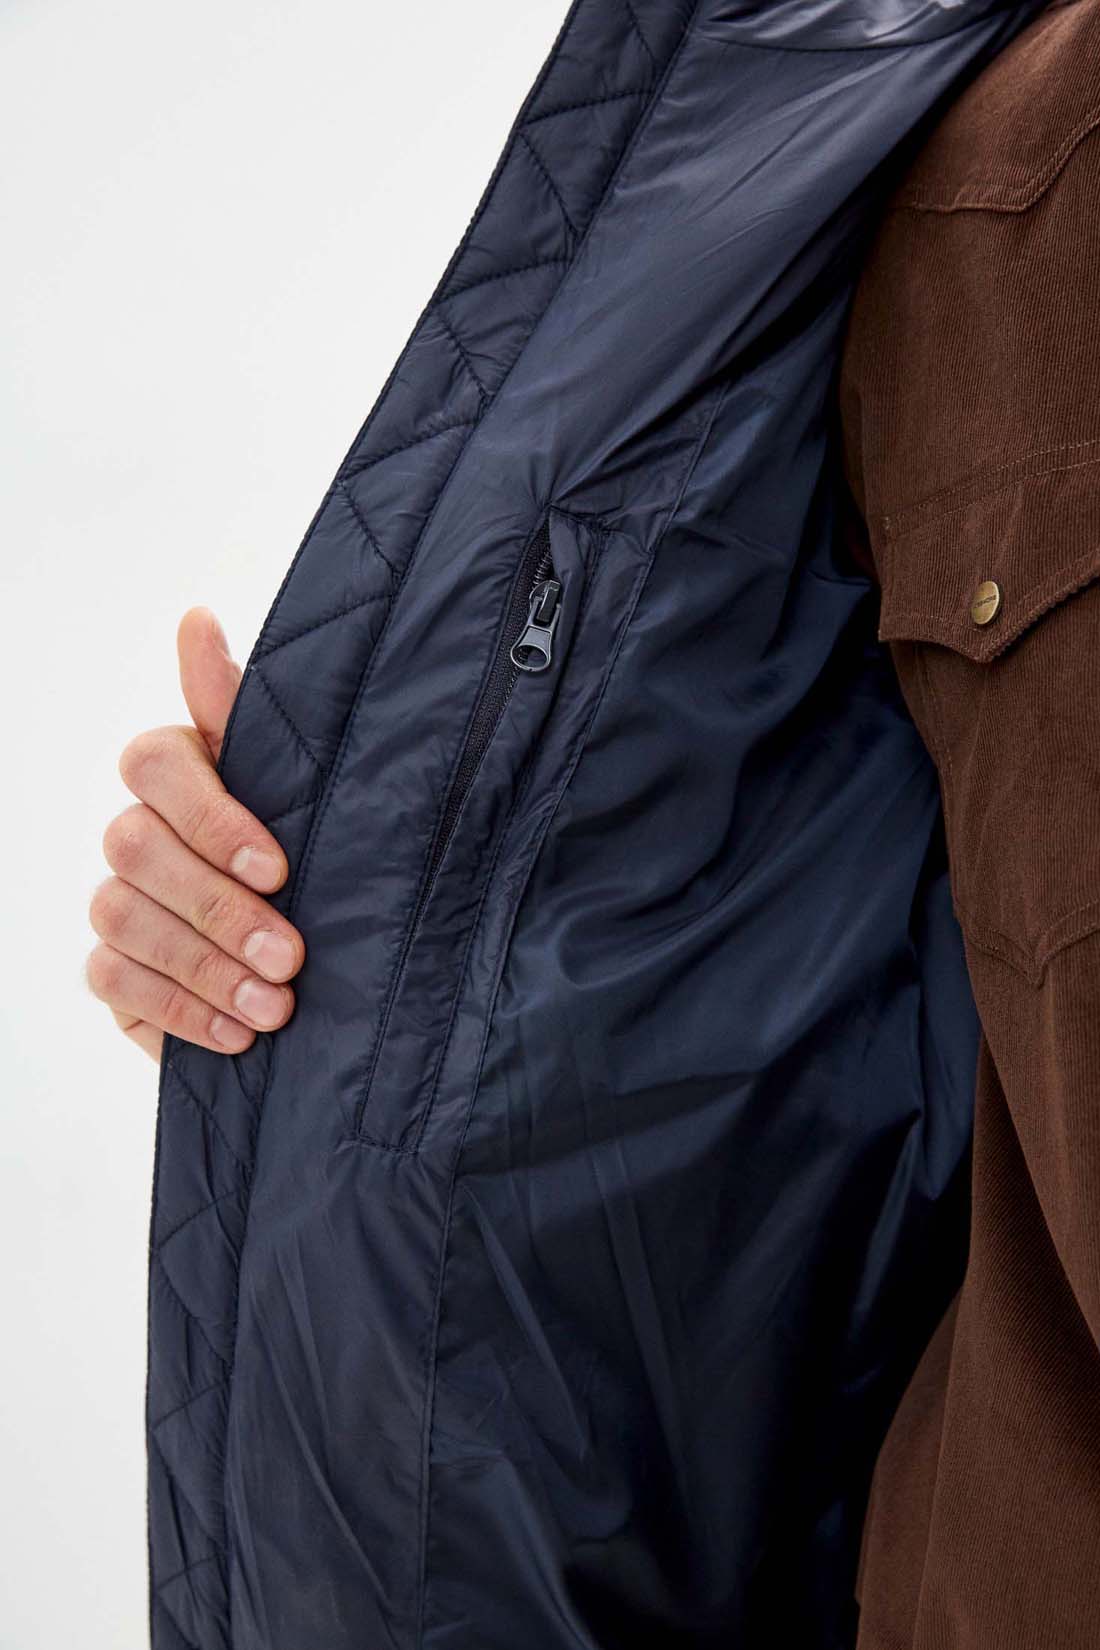 Куртка (Эко пух) (арт. baon B541701), размер XL, цвет синий Куртка (Эко пух) (арт. baon B541701) - фото 4